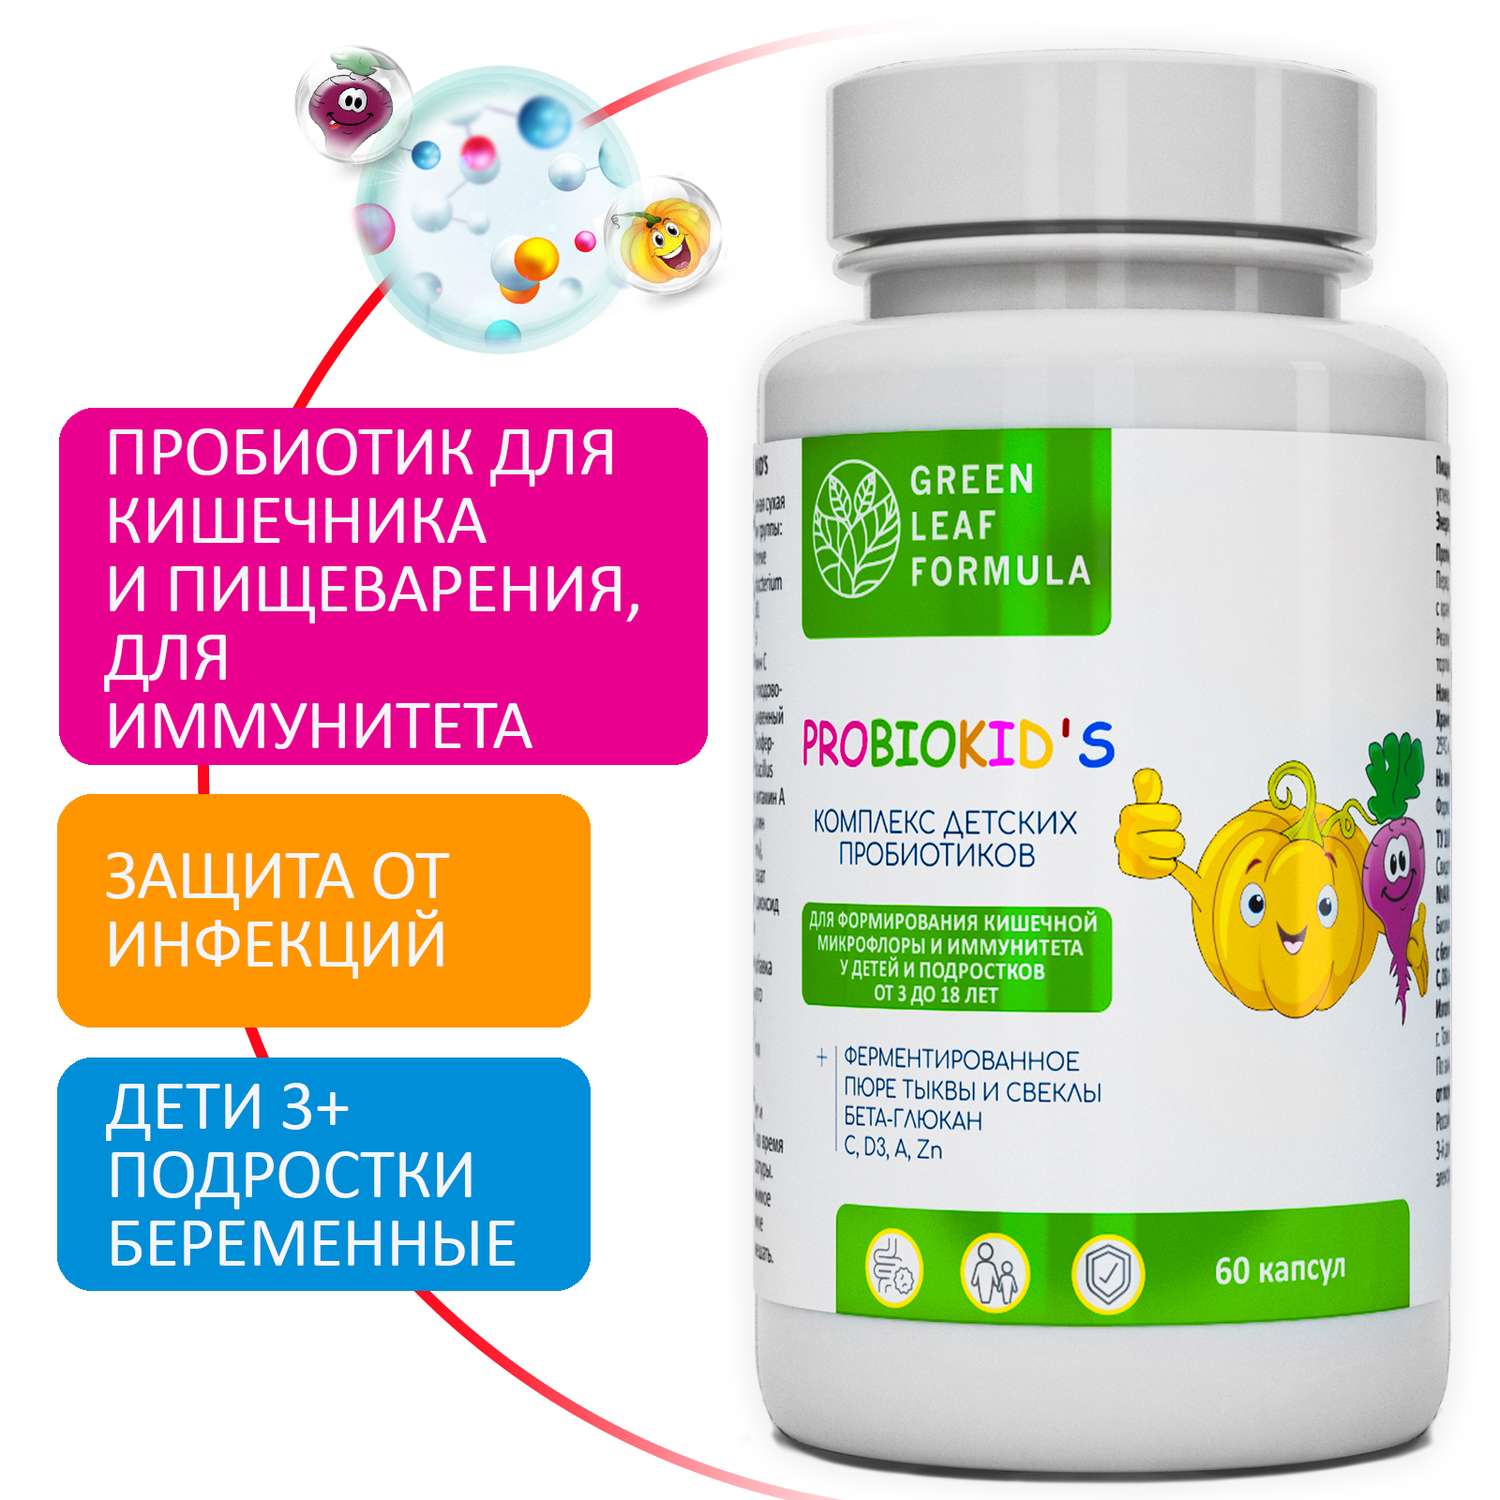 Детский пробиотик Green Leaf Formula витаминный комплекс для детей от 3 лет 60 капсул - фото 1